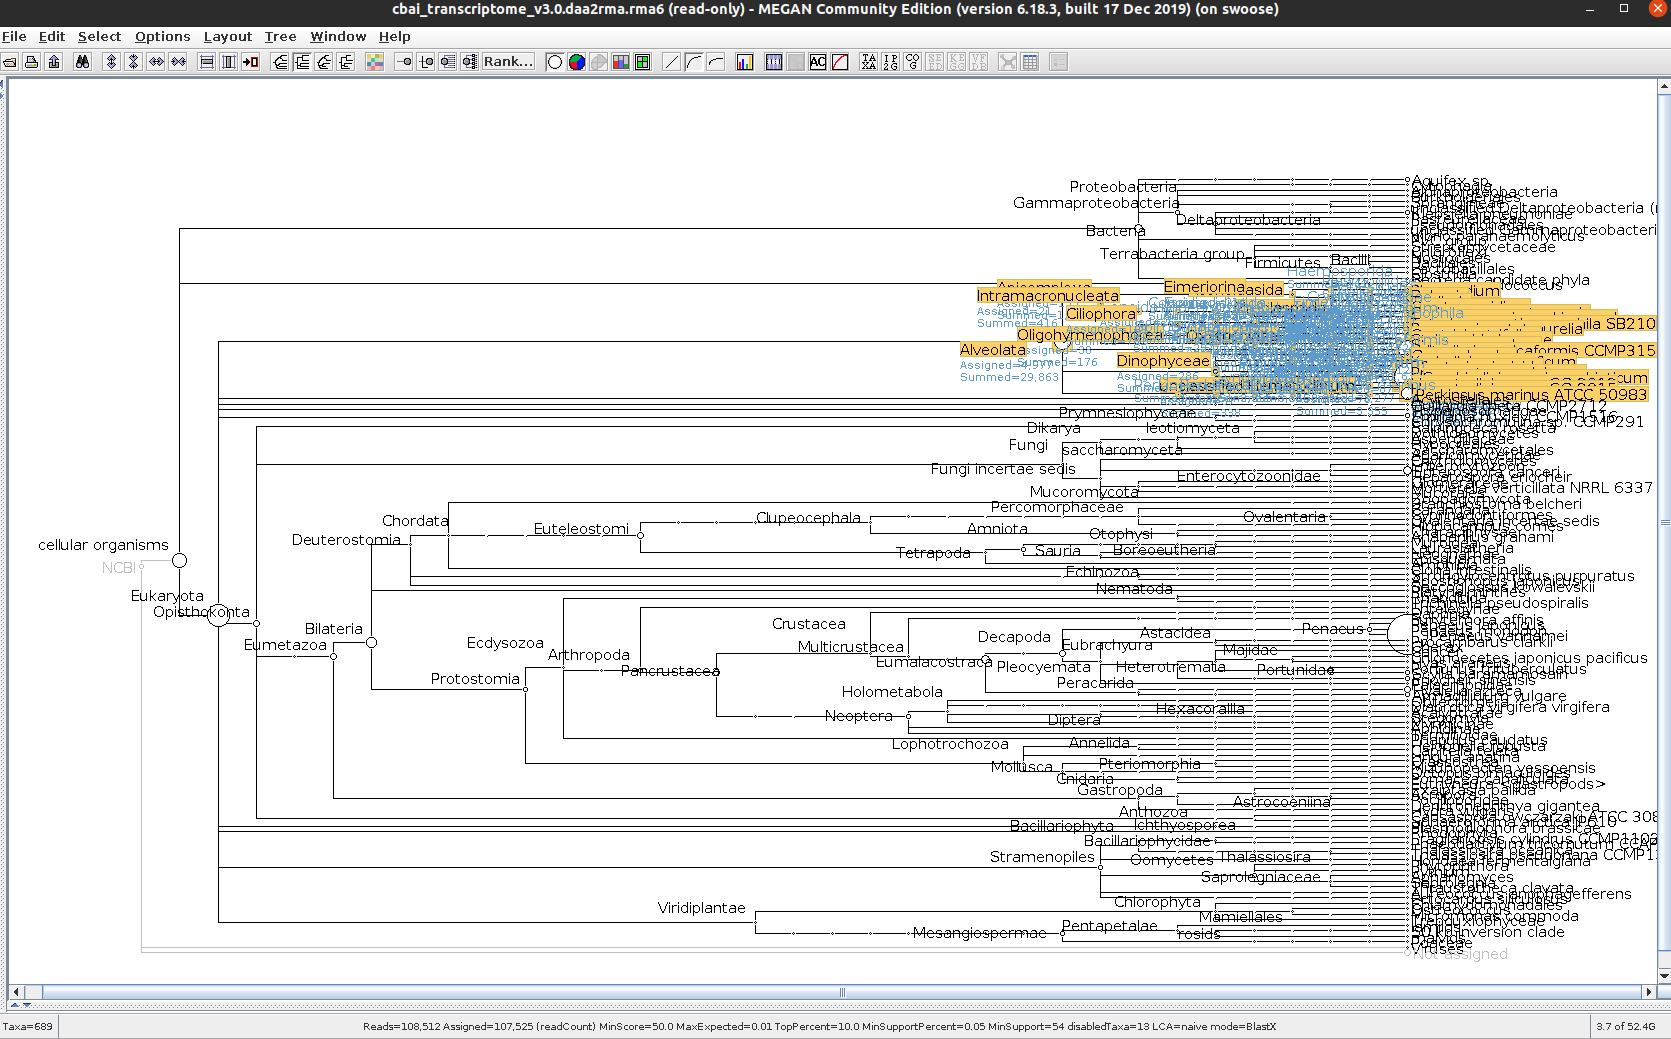 hemat_transcriptome_v3.0 MEGAN Alveolata only taxonomic tree